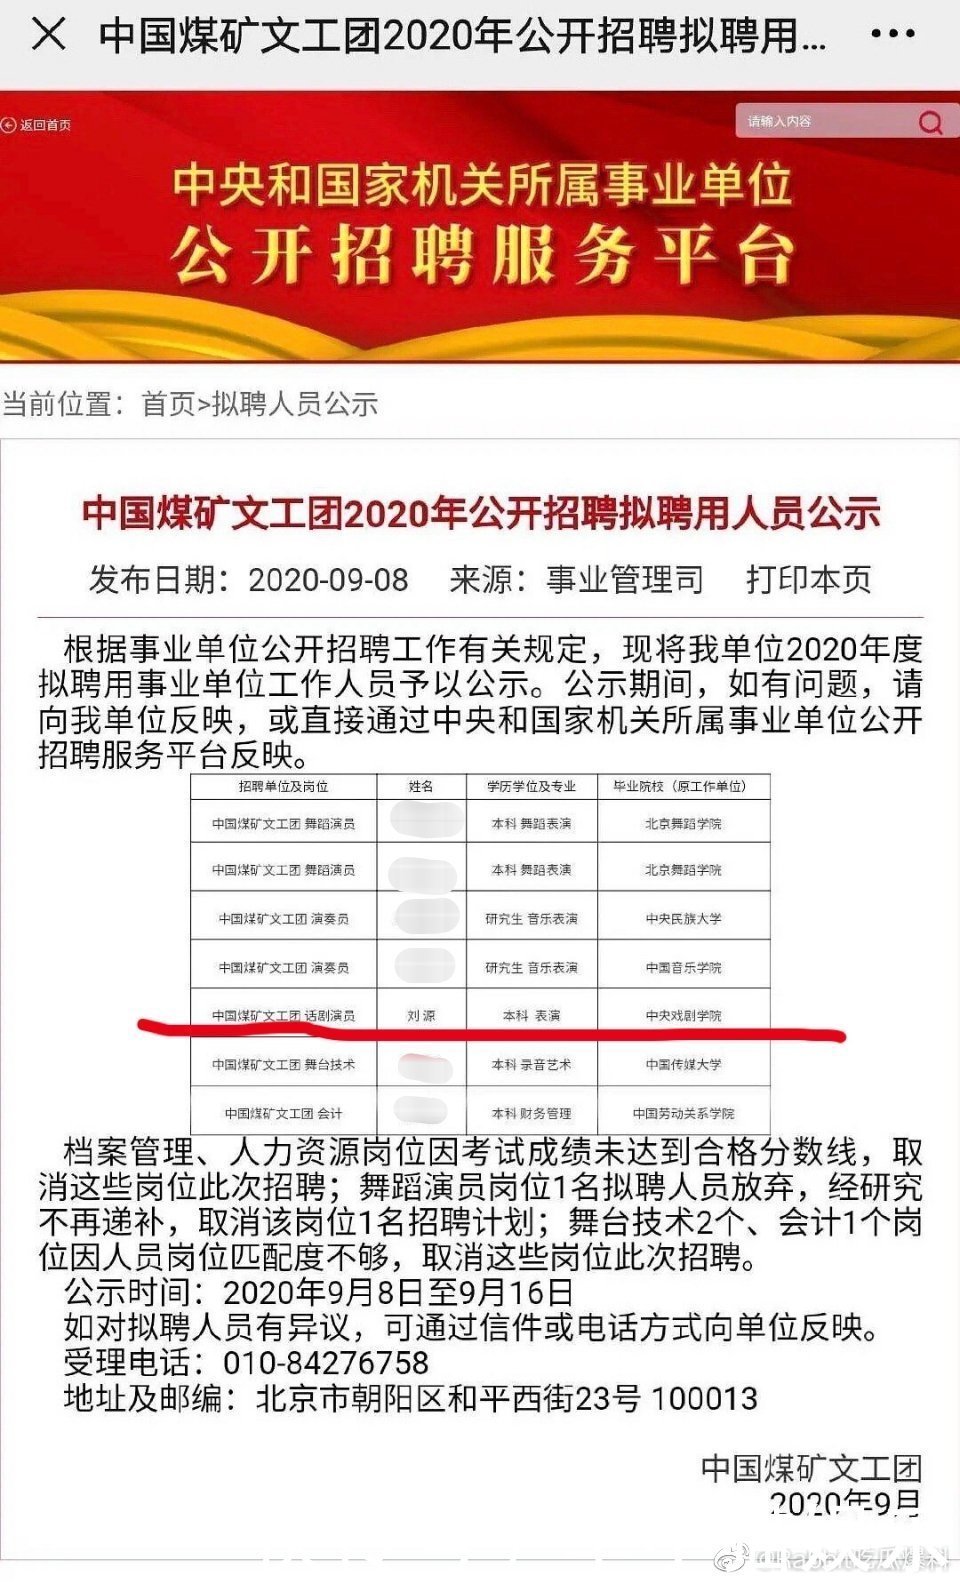 中国煤矿文工团2020年公开招聘人员公示